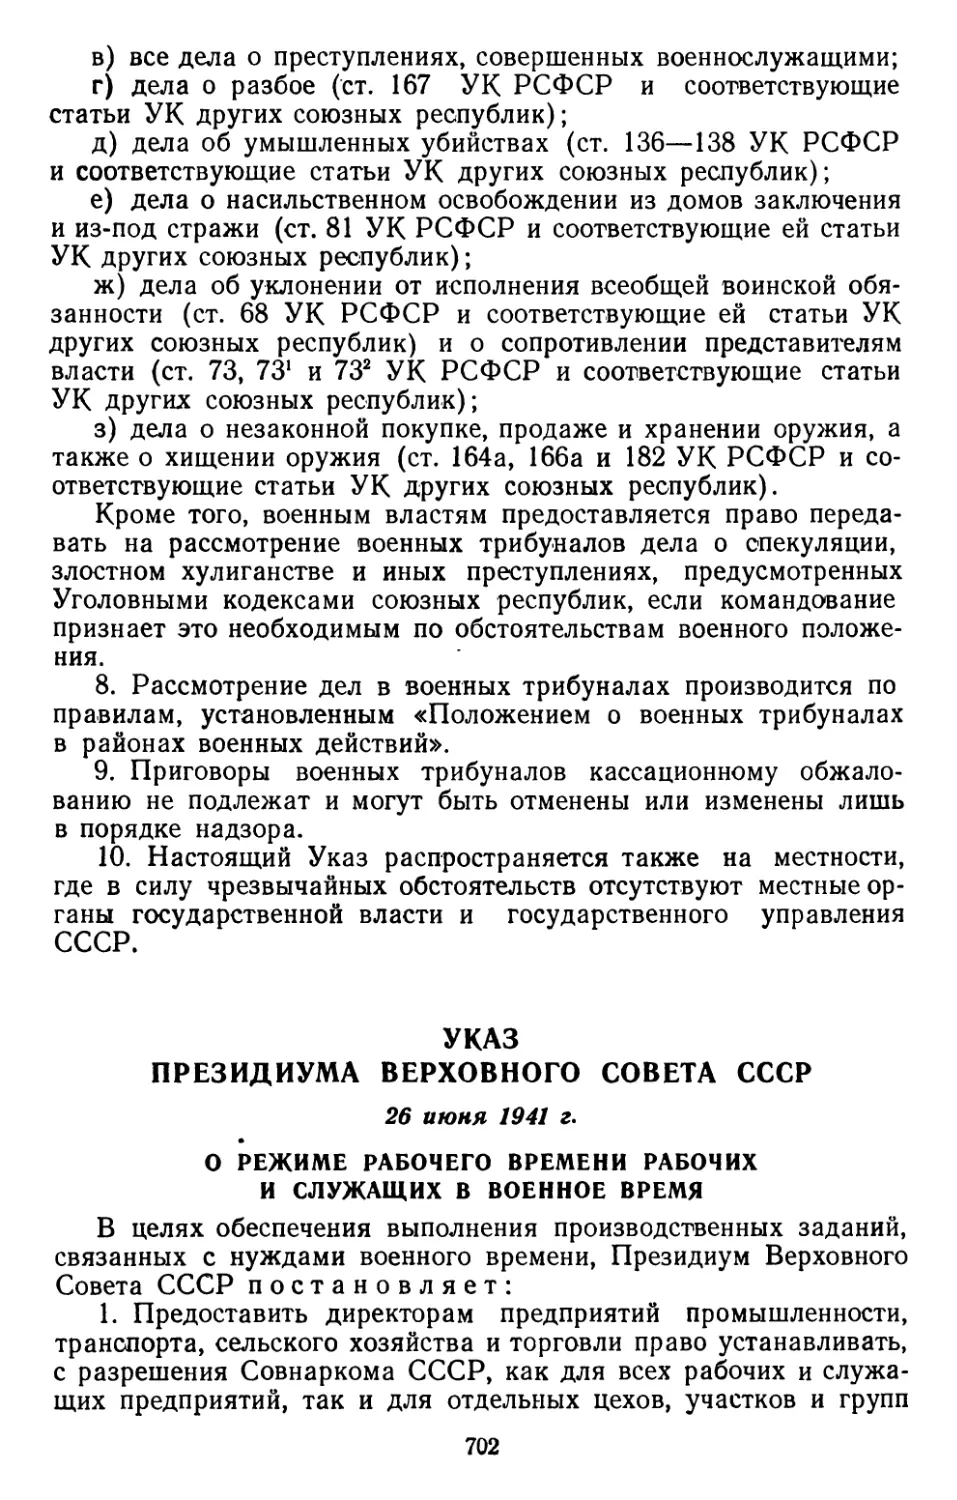 Указ Президиума Верховного Совета СССР, 26 июня 1941 г. О режиме рабочего времени рабочих и служащих в военное время